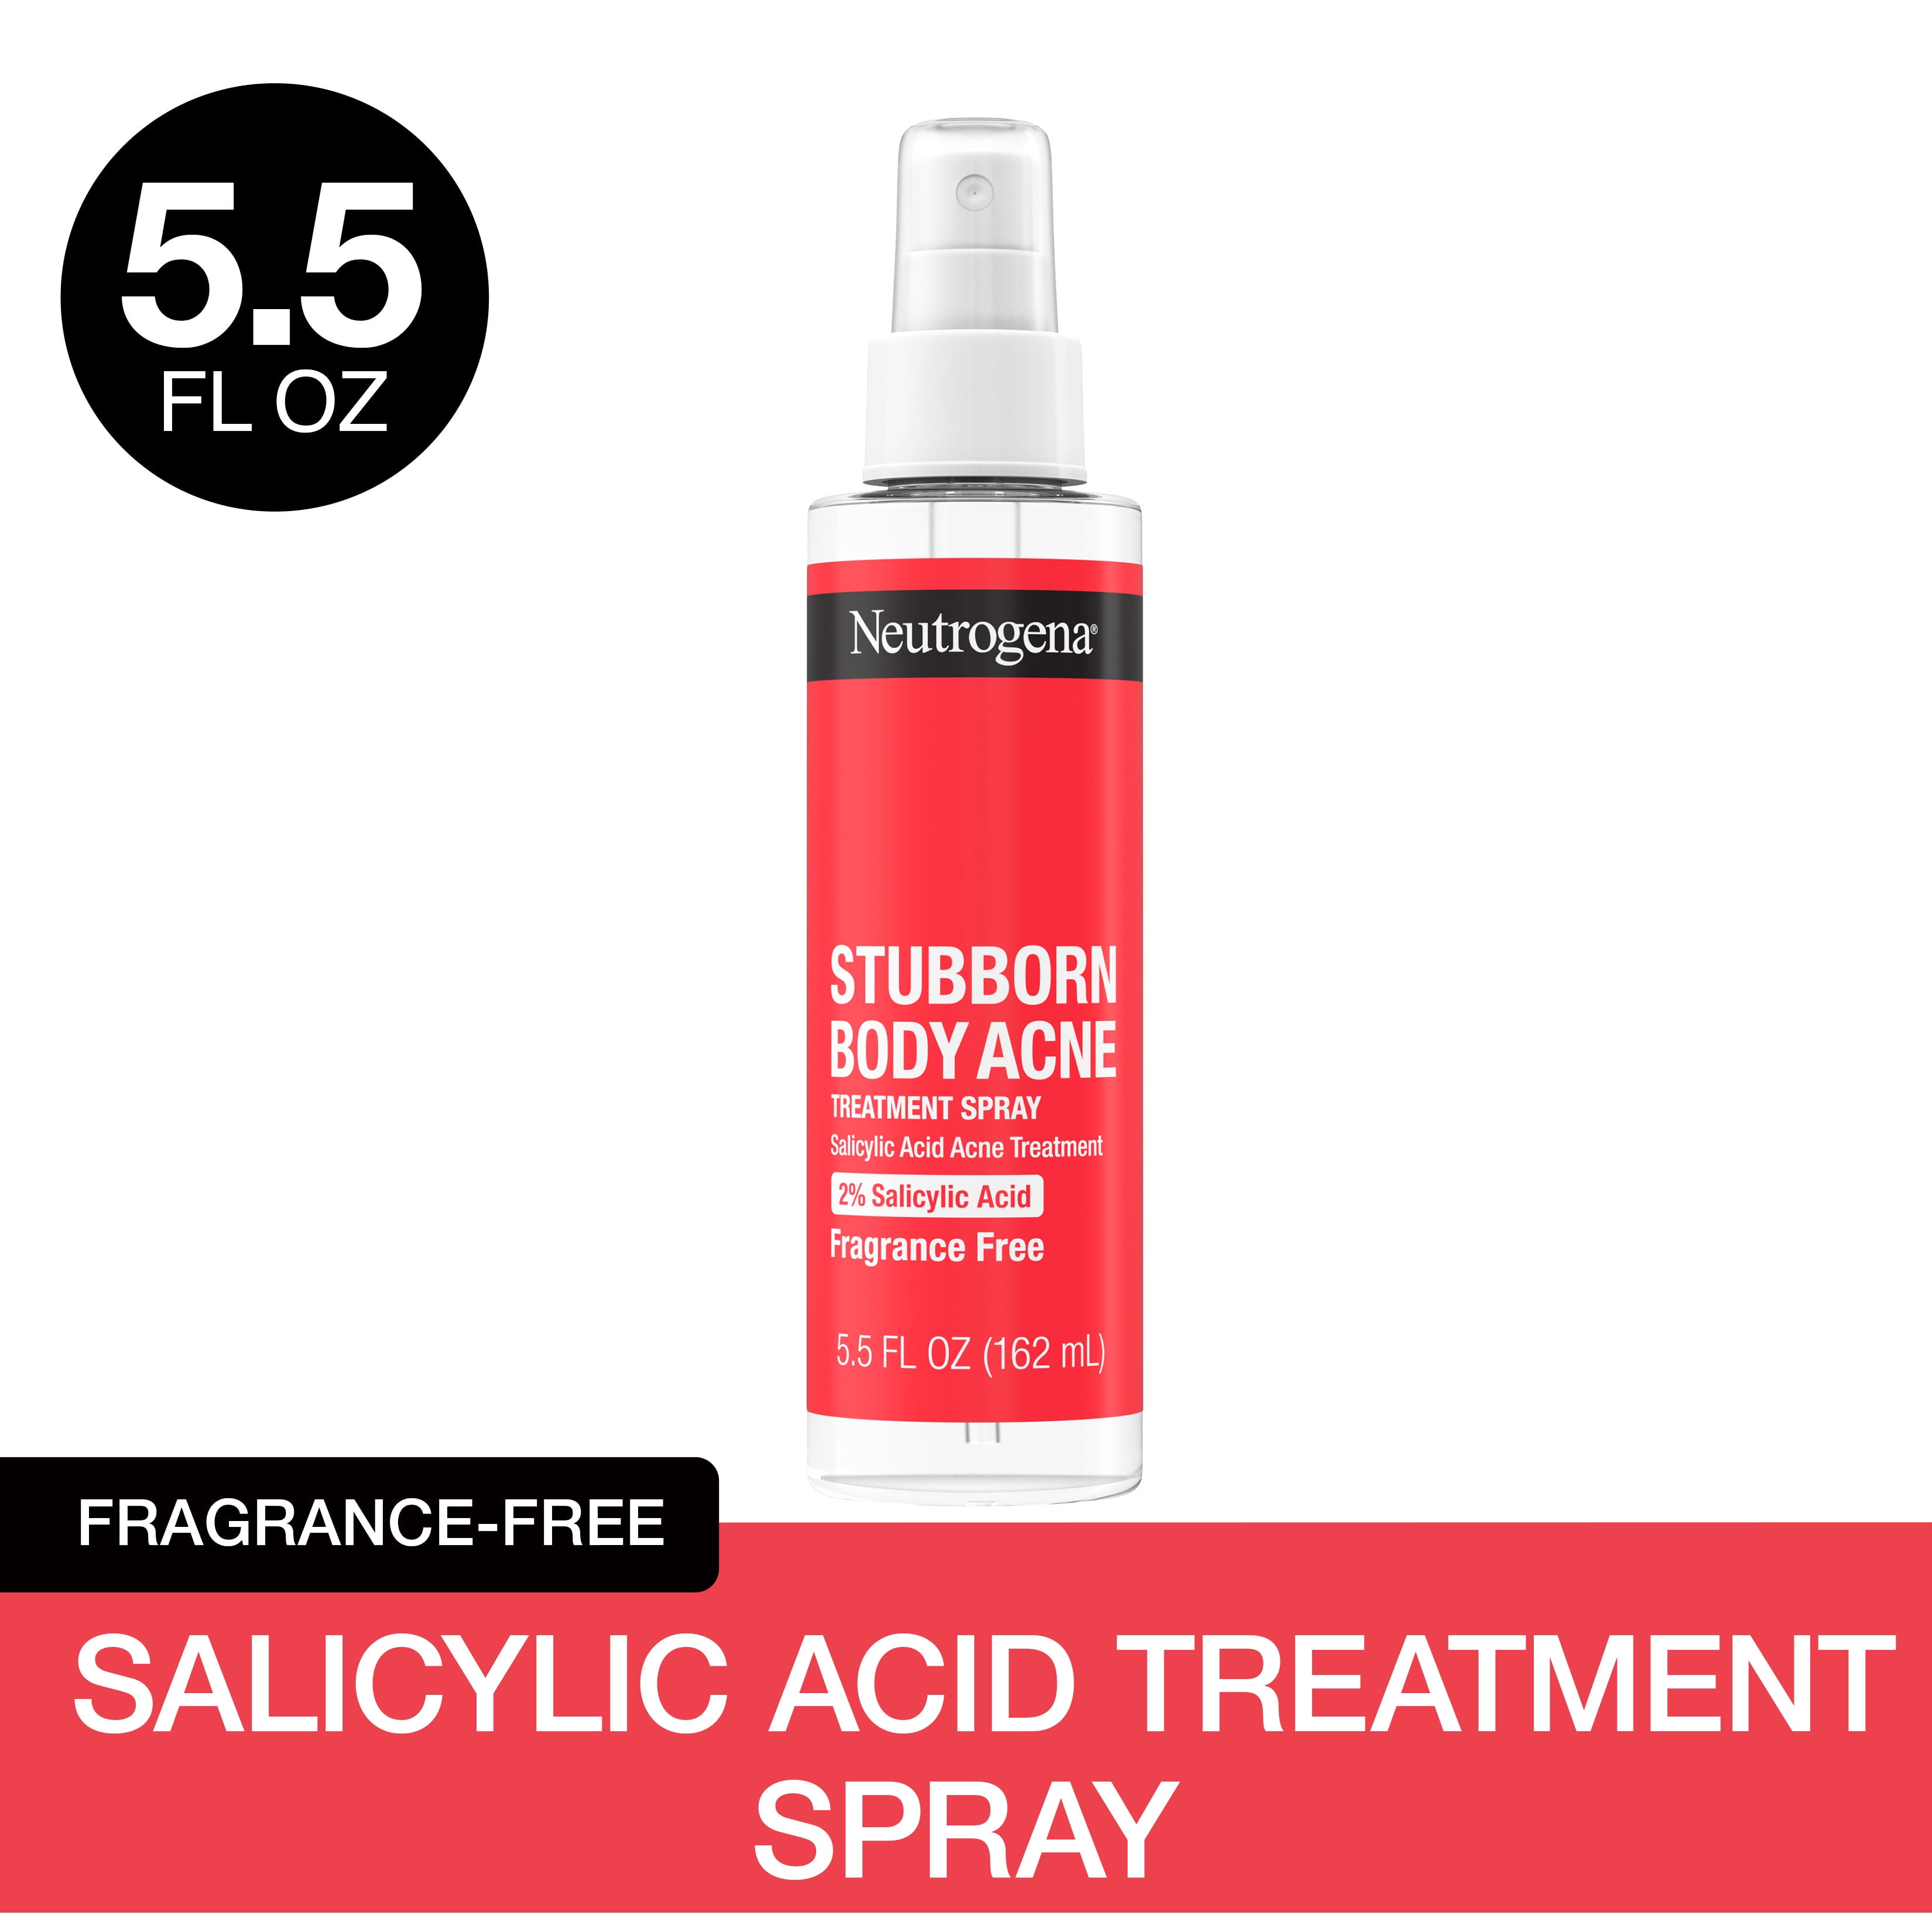 Neutrogena Stubborn Body Acne Treatment Spray, 2% Salicylic Acid, 5.5 oz